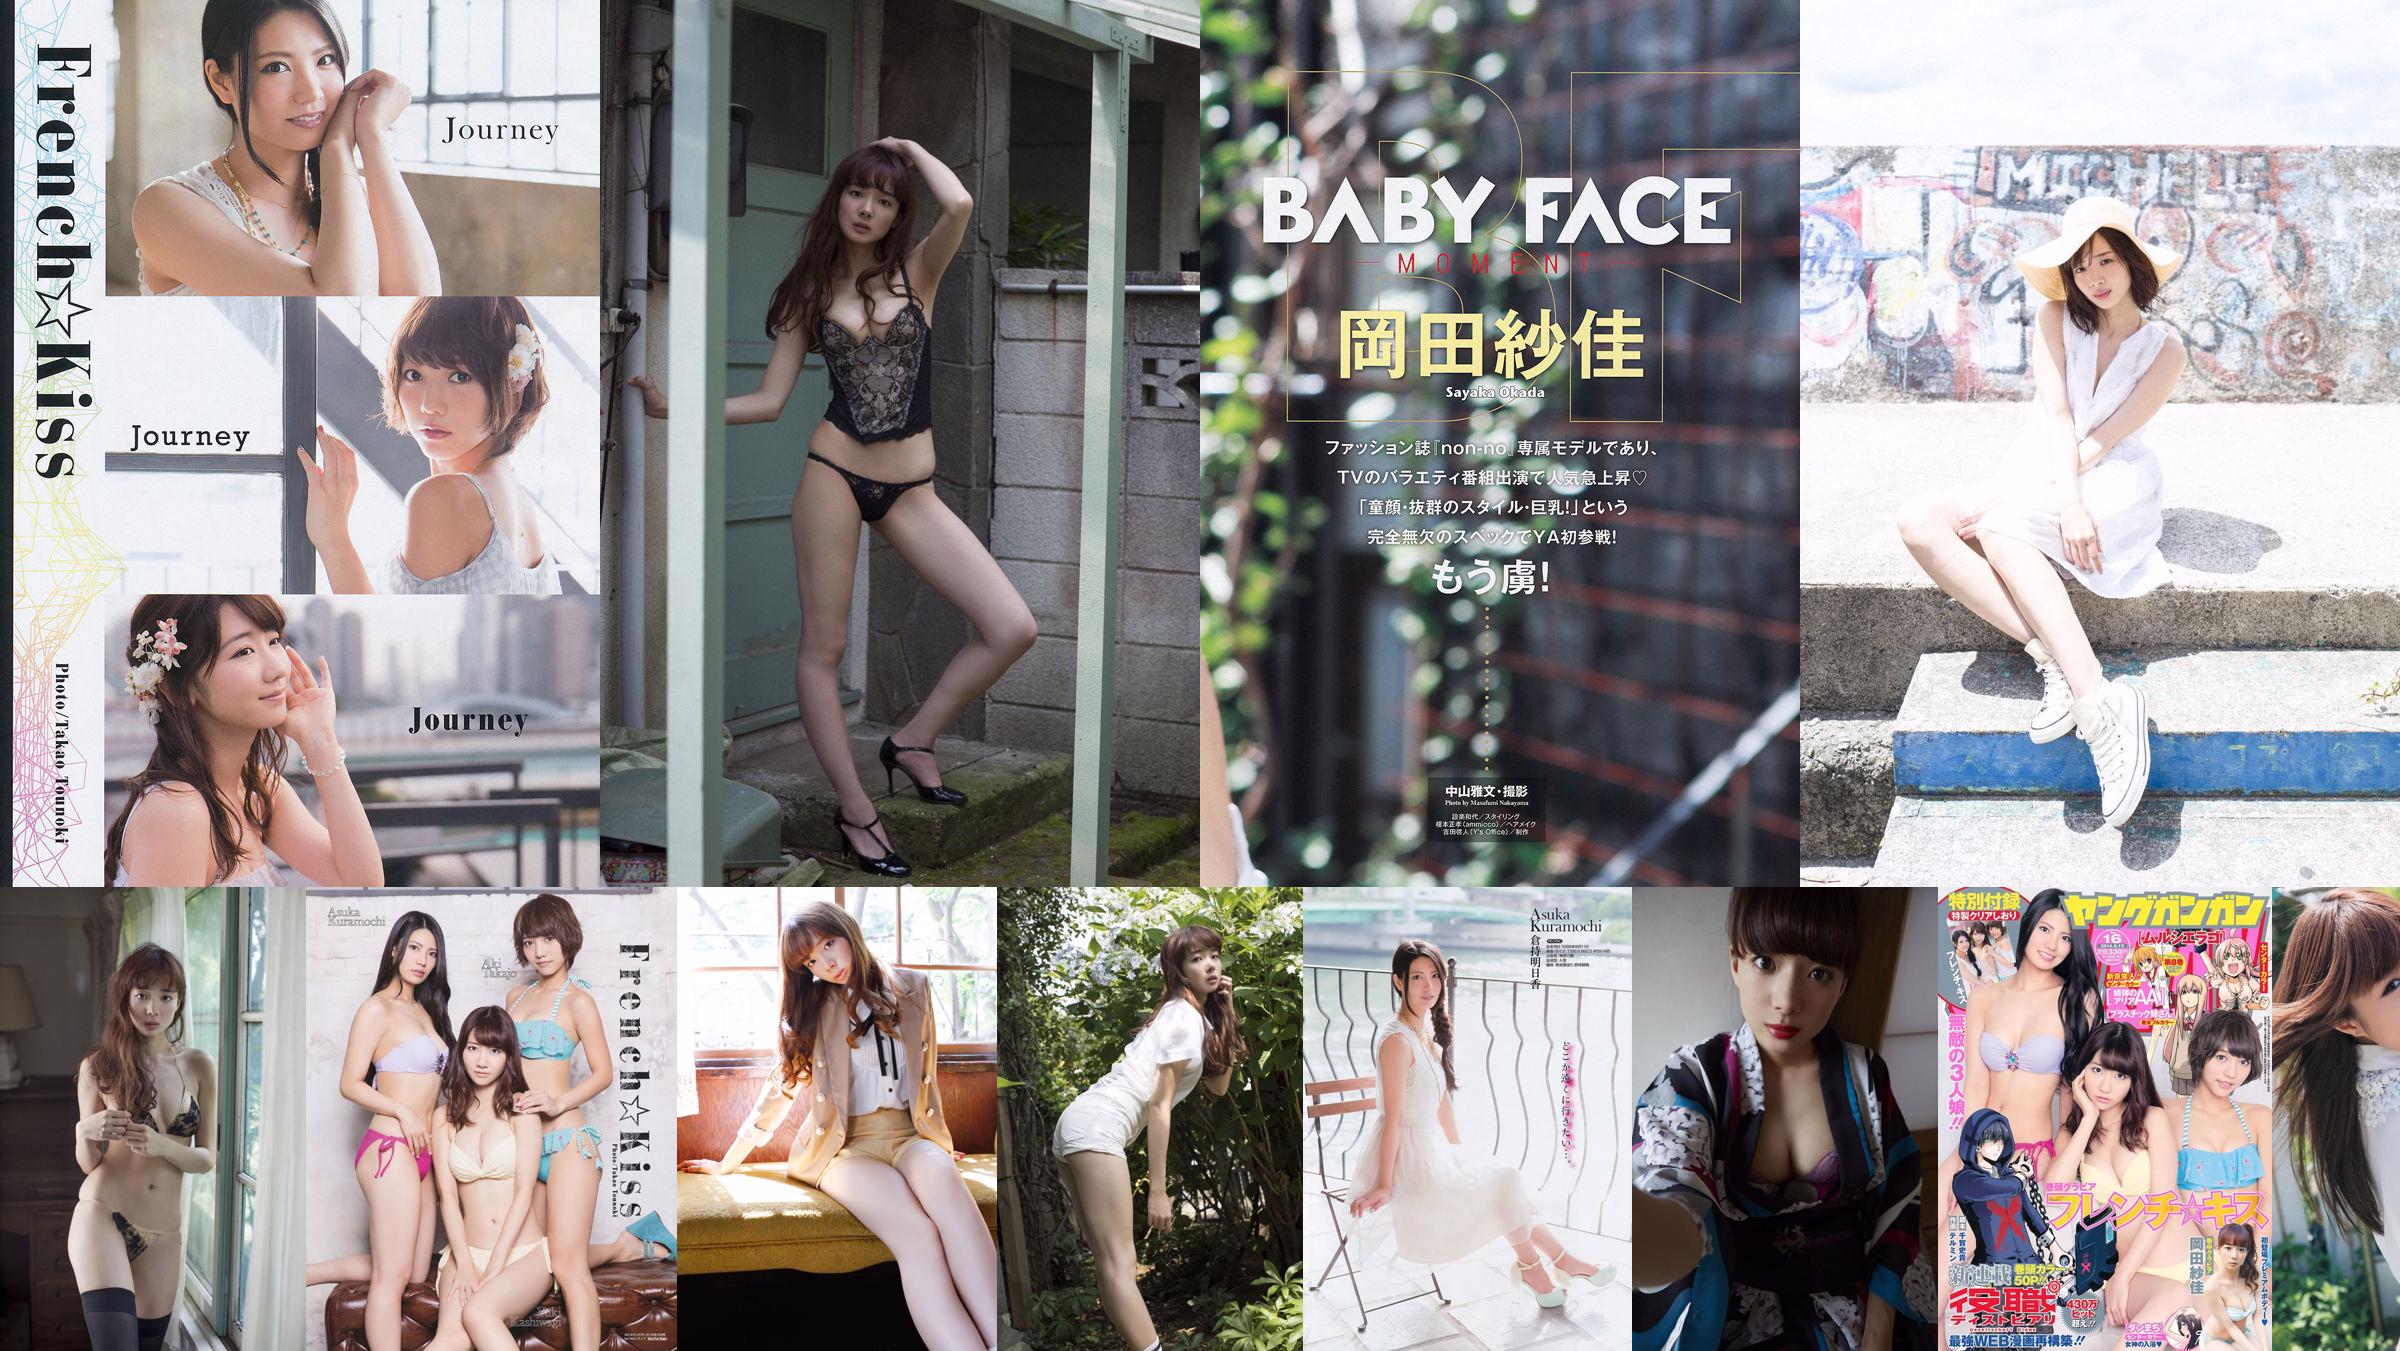 Sayaka Okada Up Up Girls (Kakko) Nishikawa Yui [Young Animal] 2014 No.12 Photo Magazine No.b11ad7 Página 3